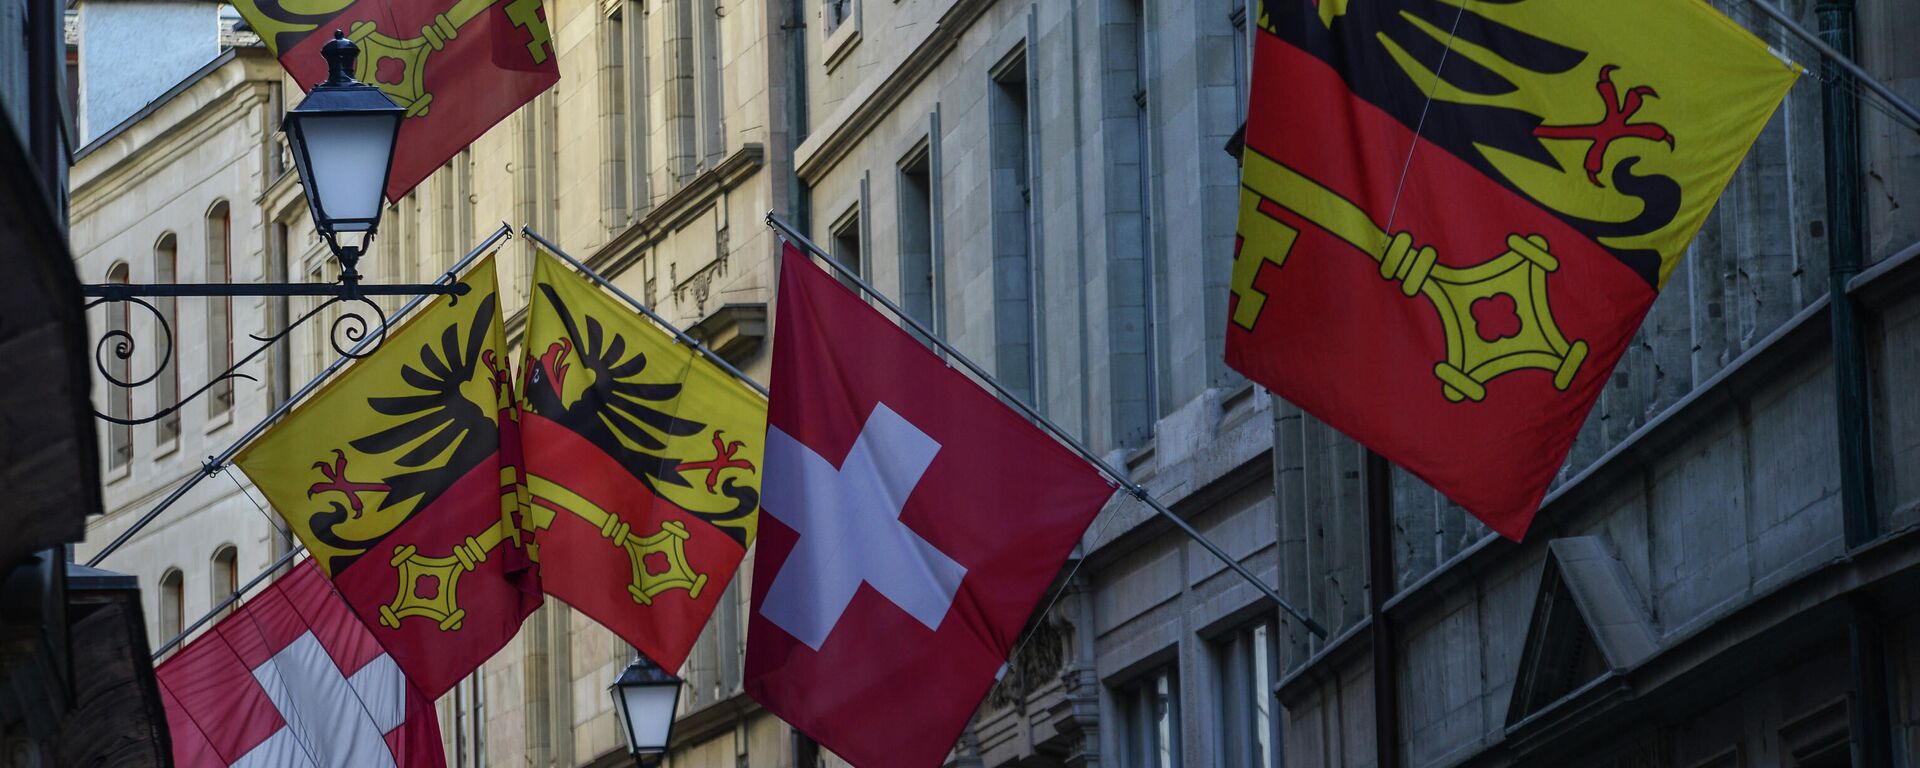 Las banderas de Suiza en una calle de Ginebra - Sputnik Mundo, 1920, 18.05.2021